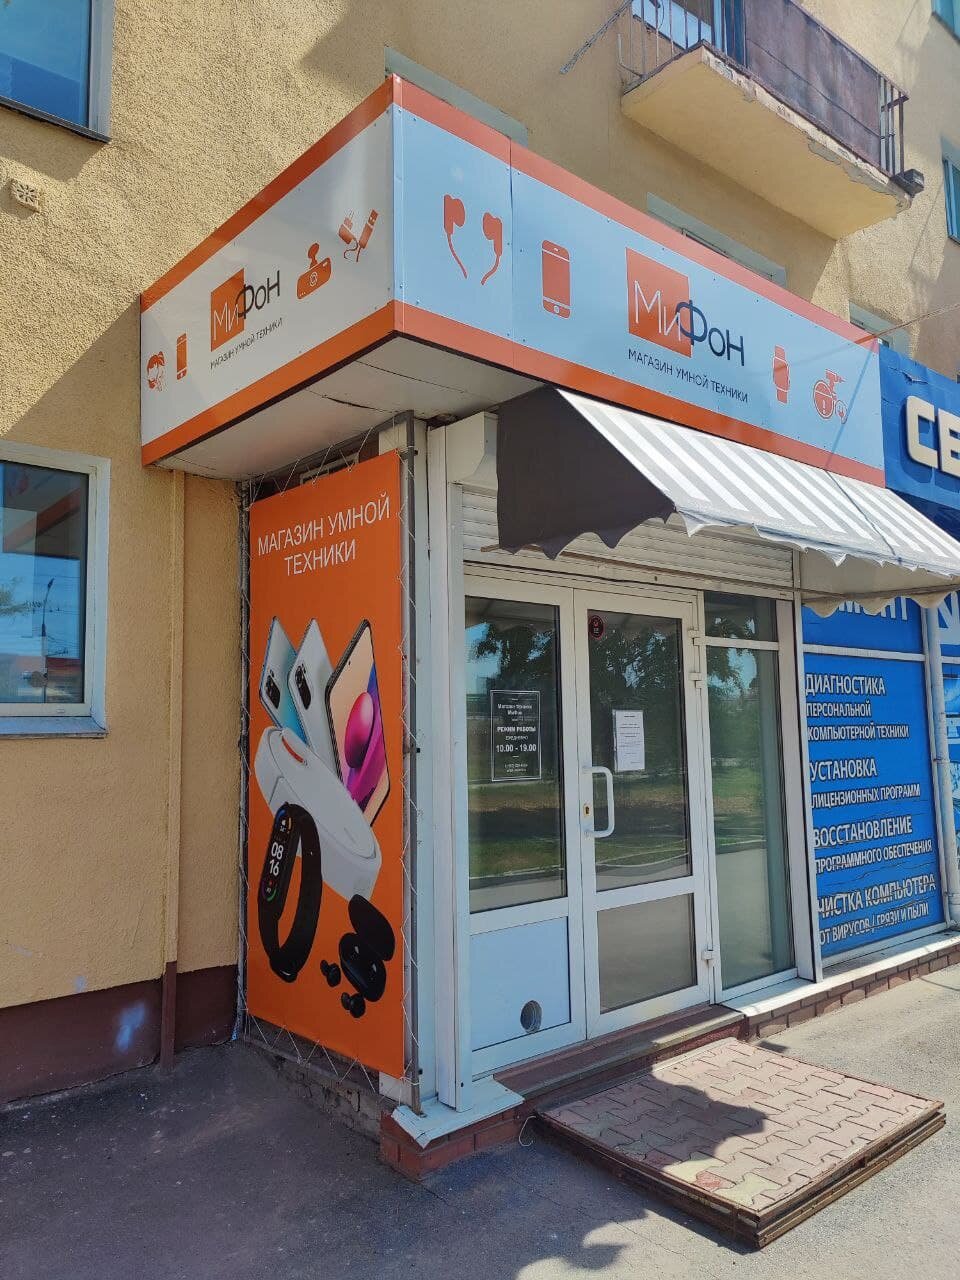 Фирменный Магазин Xiaomi В Омске Адреса